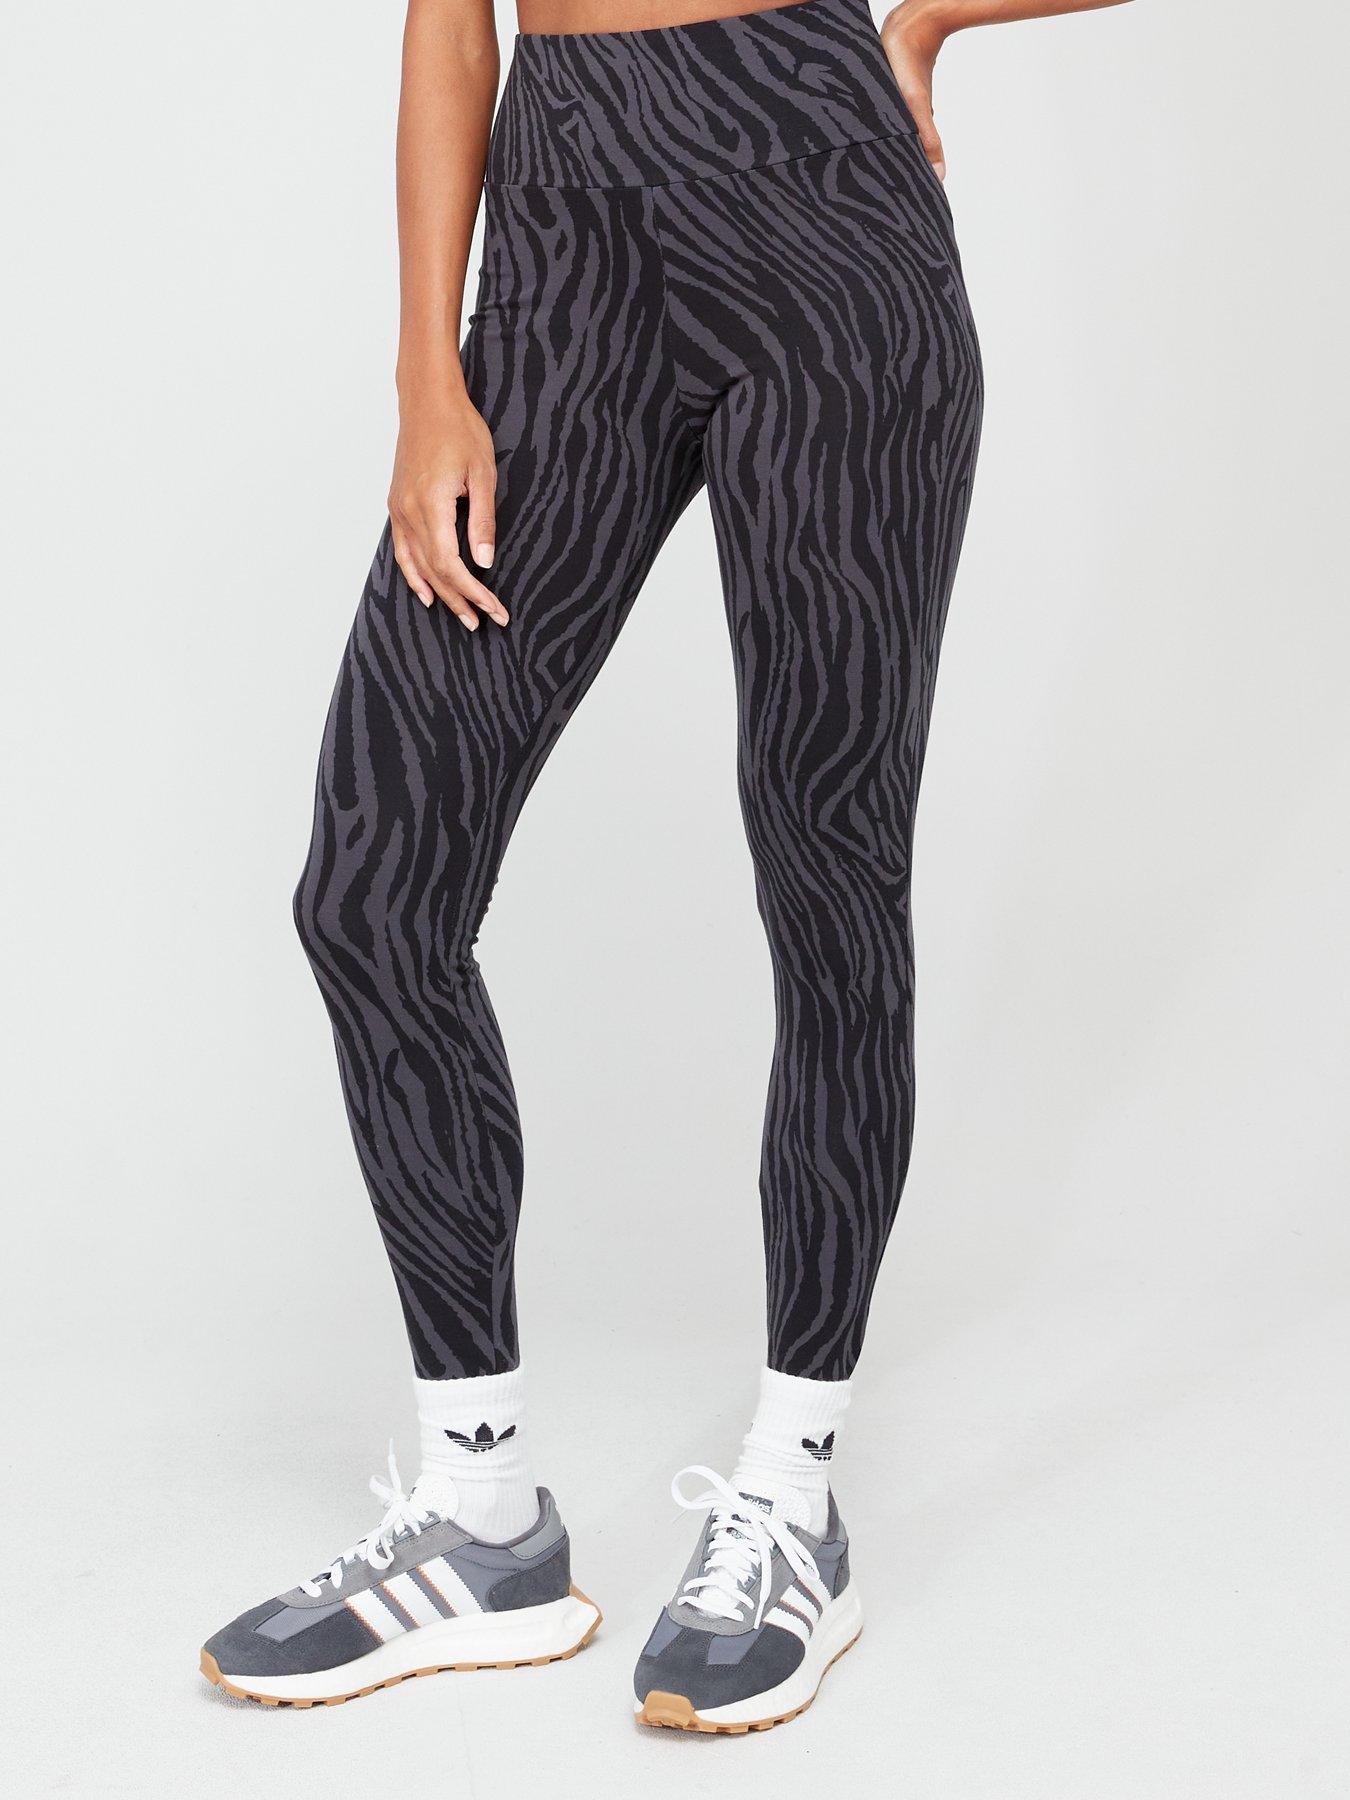 3-Stripes Zebra Leggings by adidas Originals